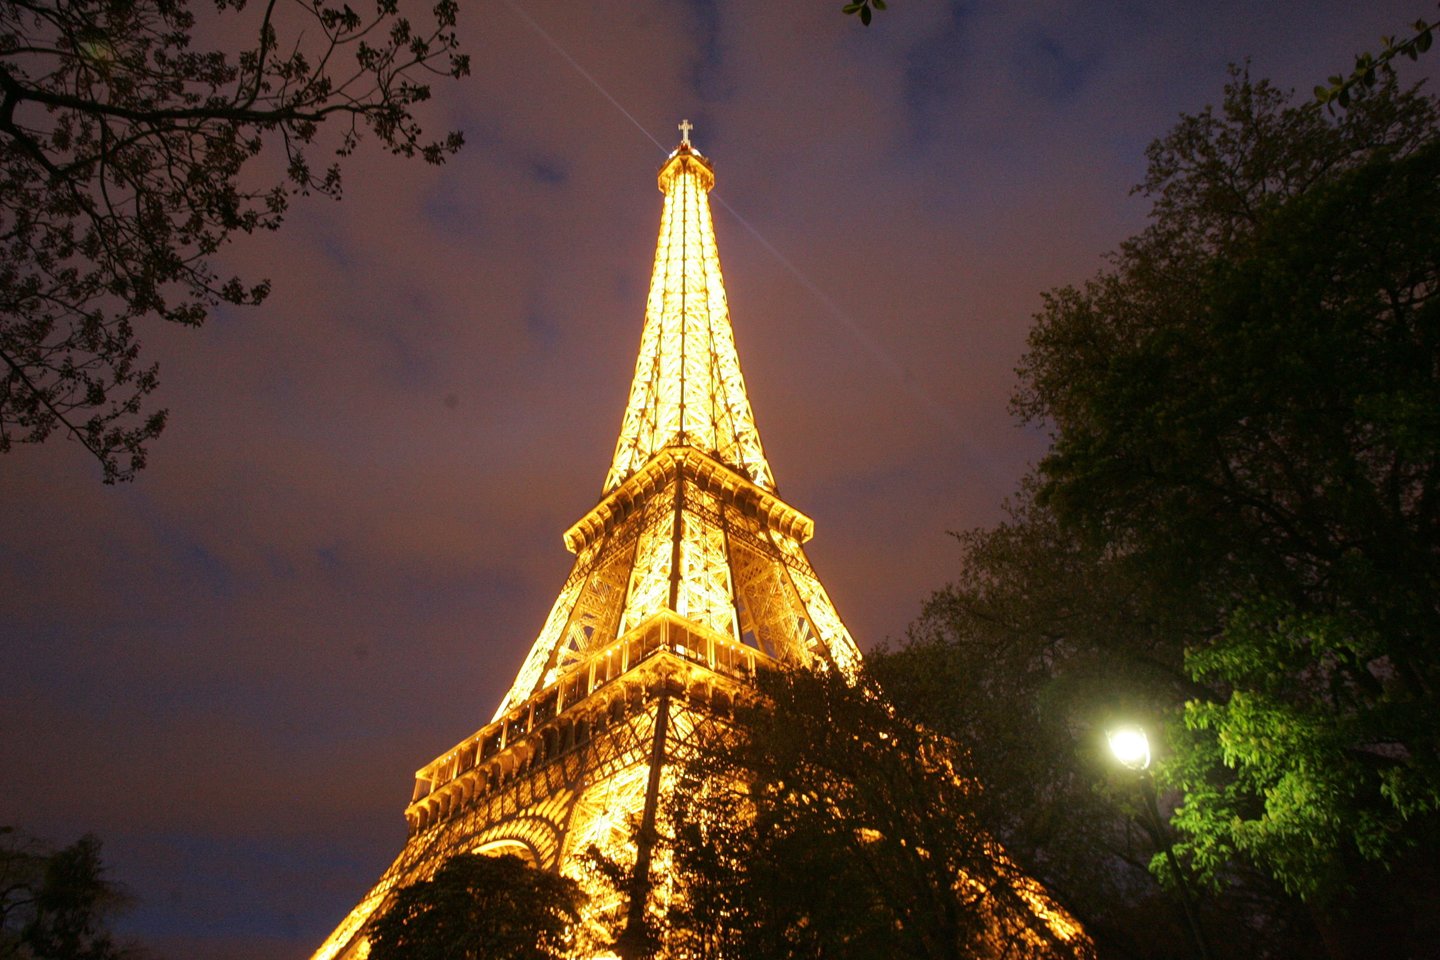 1832 m. gimė prancūzų inžinierius Alexandre’as Gustave’as Eiffelis. Žymiausias jo statinys – 1889 m. pasaulinei parodai Paryžiuje pastatytas 300 m aukščio plieninis bokštas, tapęs Paryžiaus simboliu. Tuo metu jis buvo aukščiausias statinys pasaulyje. Mirė 1923 m.<br>A.Barzdžiaus nuotr.